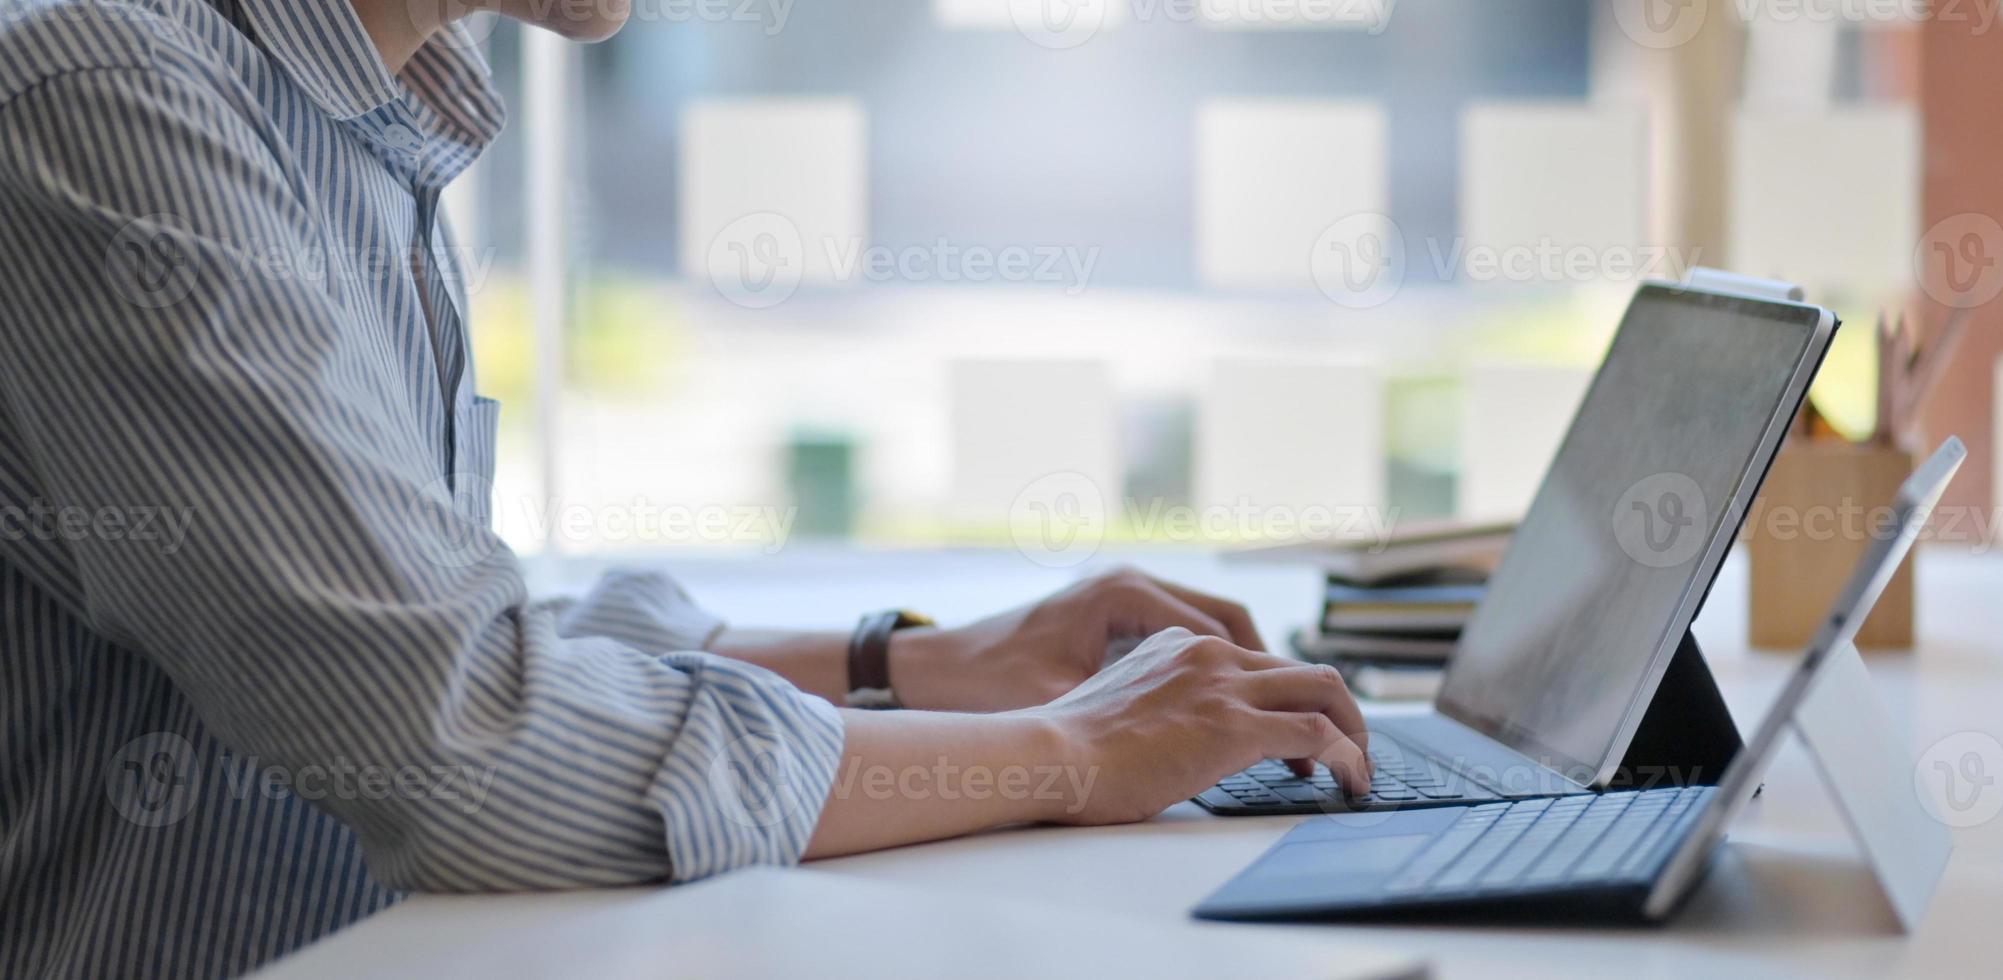 Captura recortada de un hombre que usa una computadora portátil y una tableta digital en una oficina moderna. foto